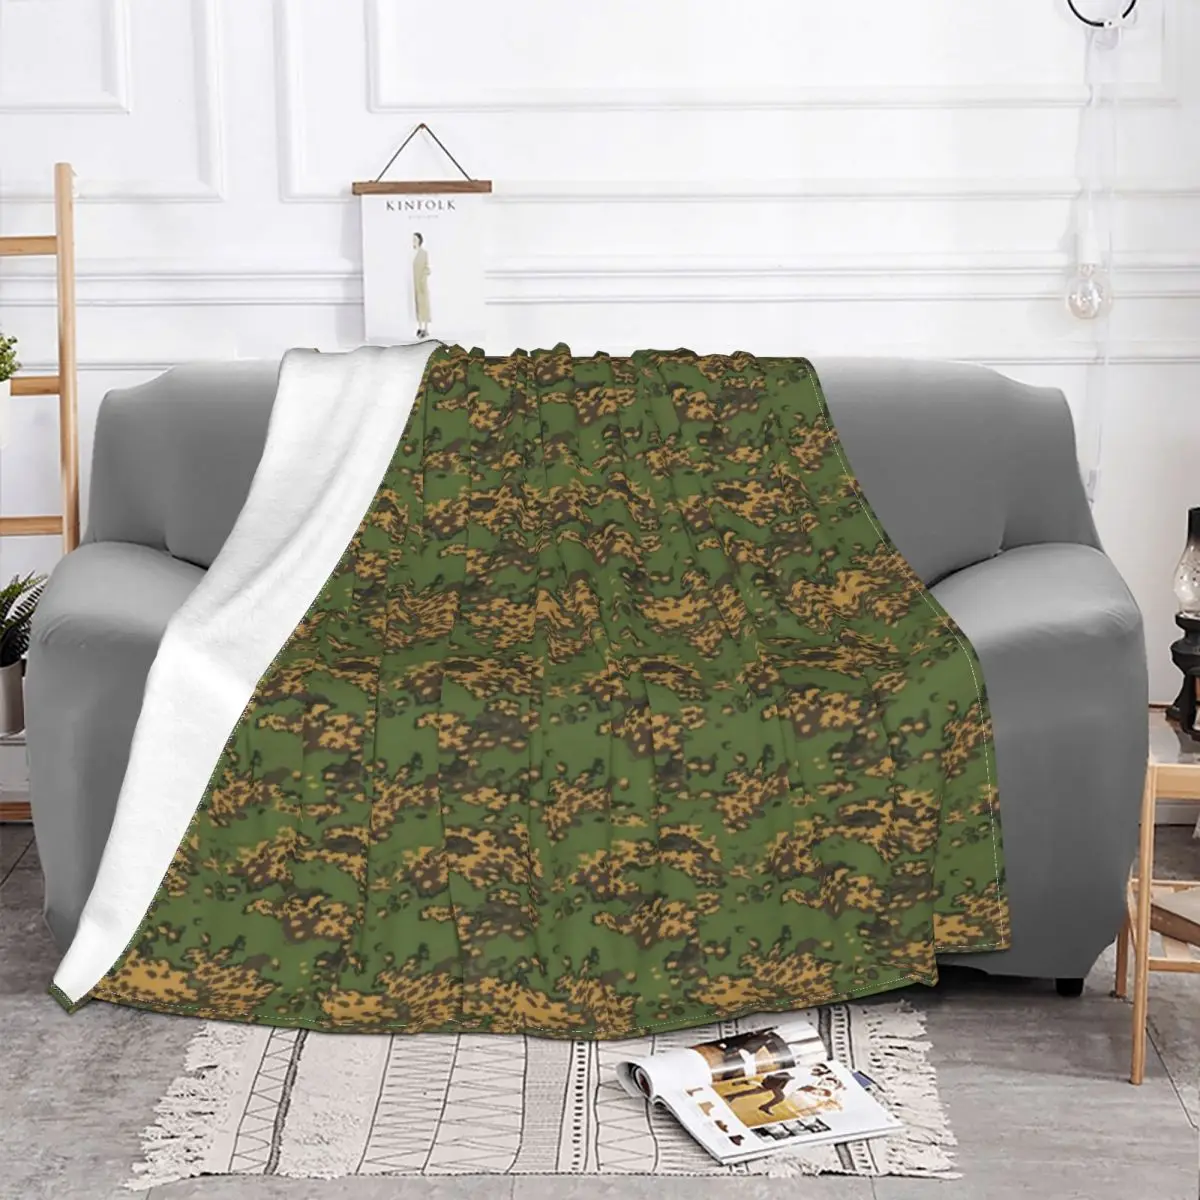 Русский лесной камуфляж, русское одеяло из флиса, популярное осенне-зимнее супер мягкое одеяло для кровати, дорожное одеяло. . ' - ' . 1